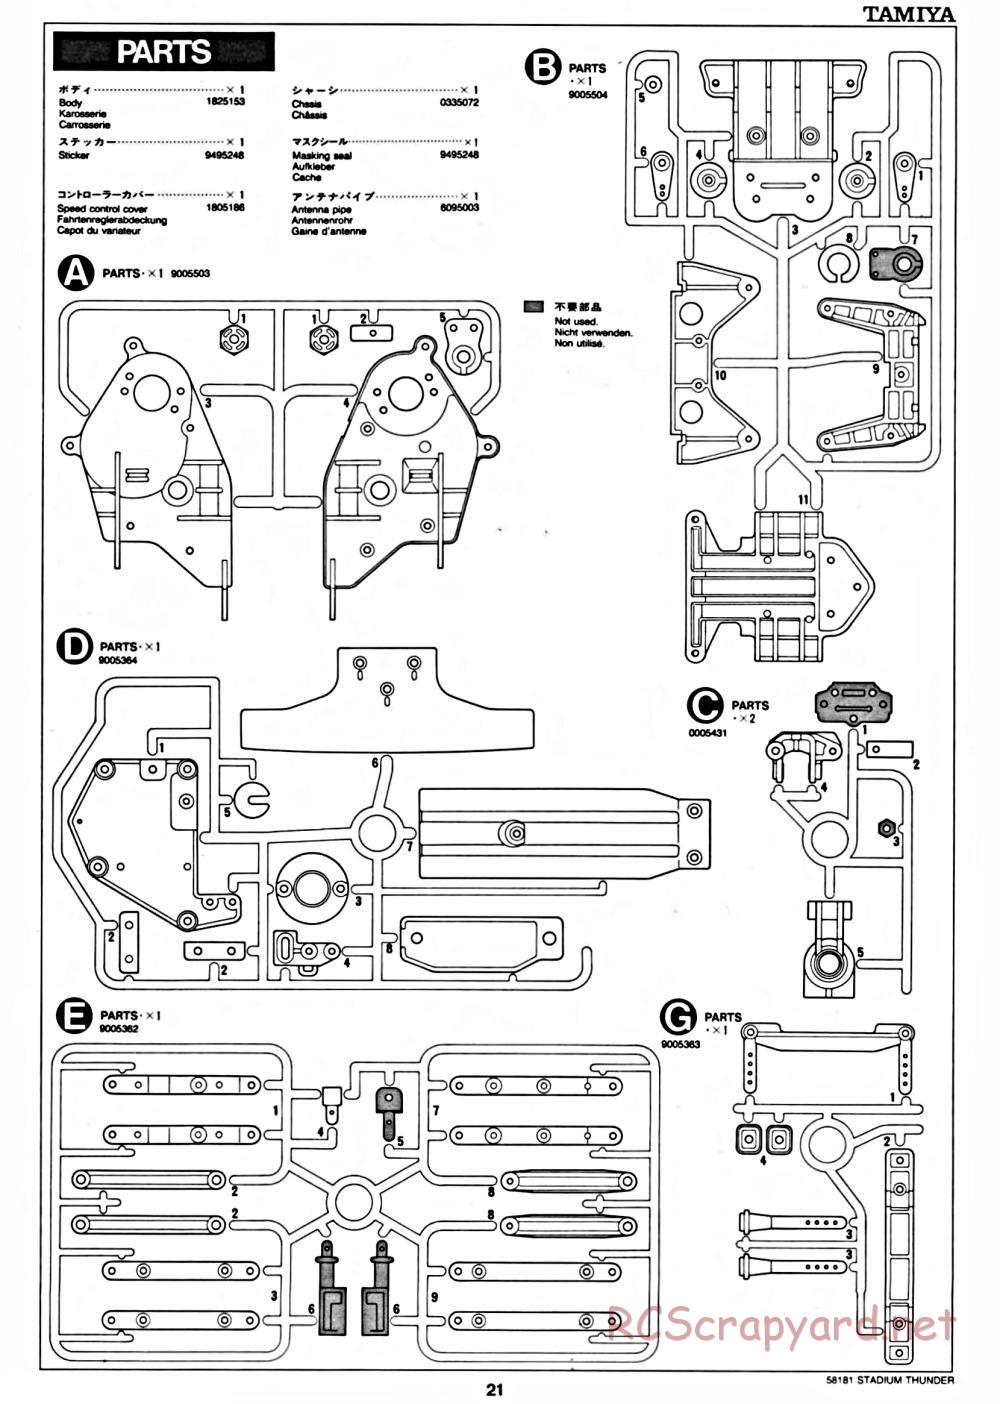 Tamiya - Stadium Thunder Chassis - Manual - Page 21